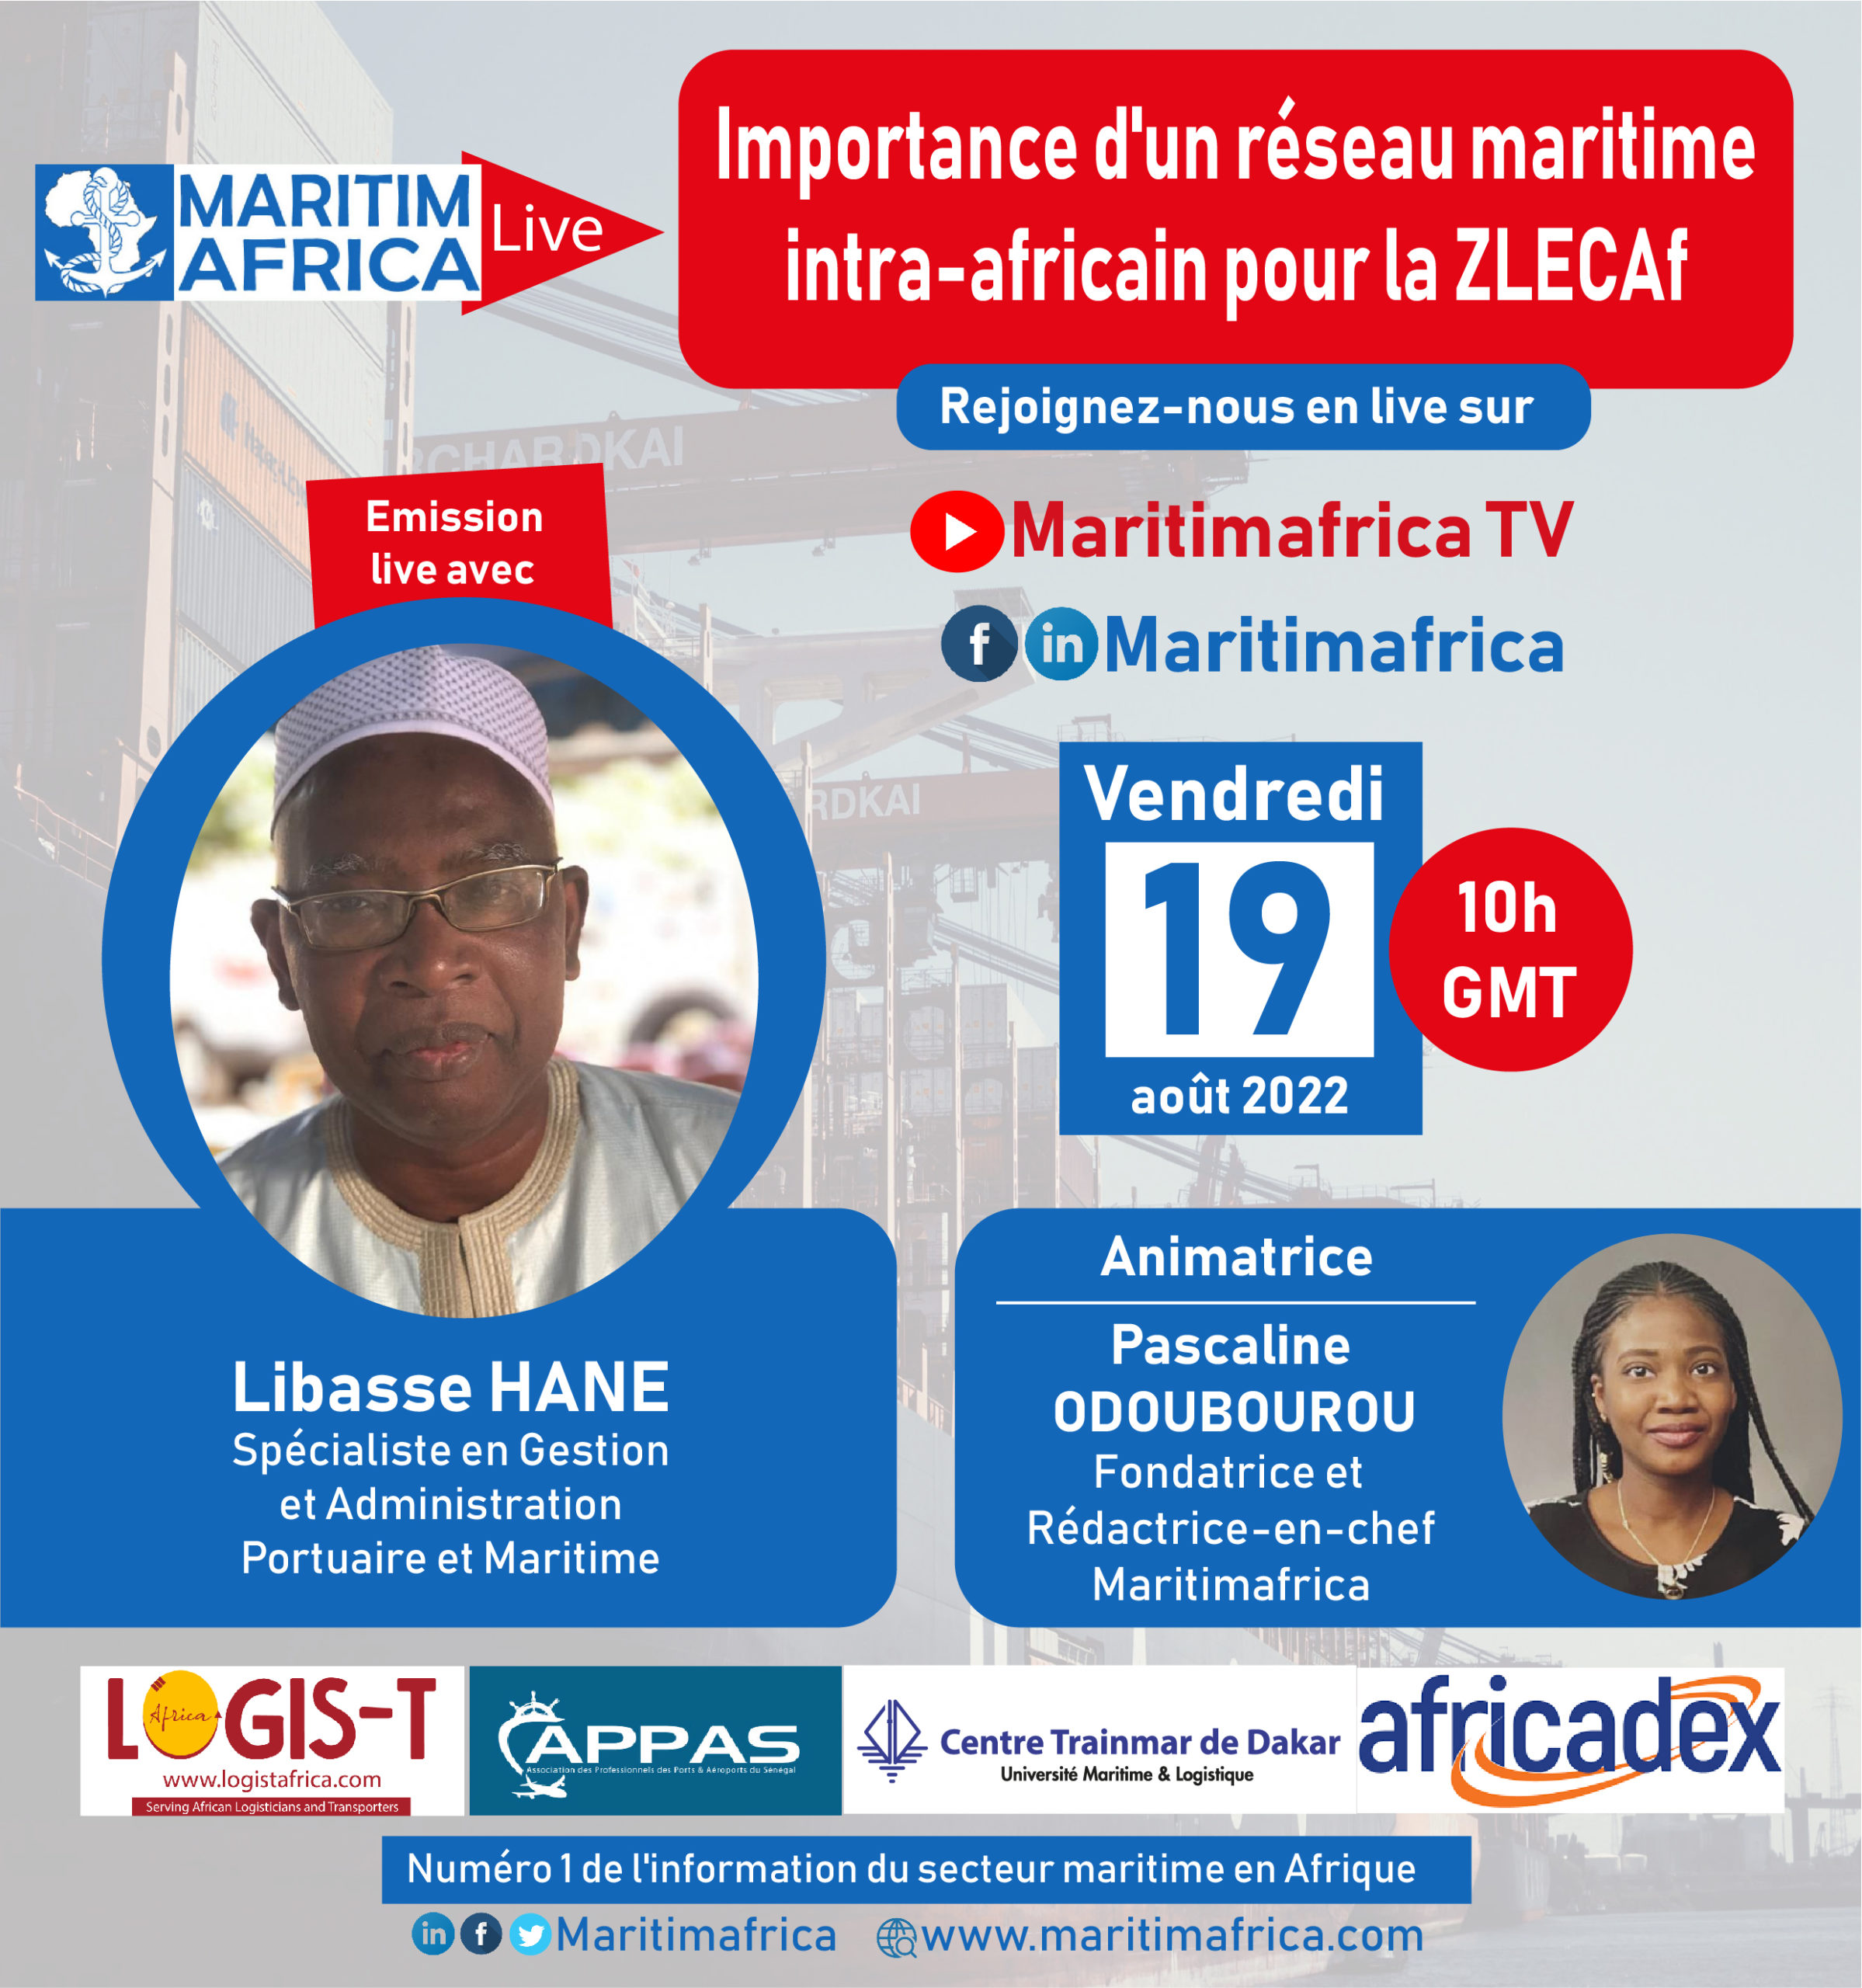 Maritimafrica Live : « Importance d’un réseau maritime intra-africain pour la ZLECAF »